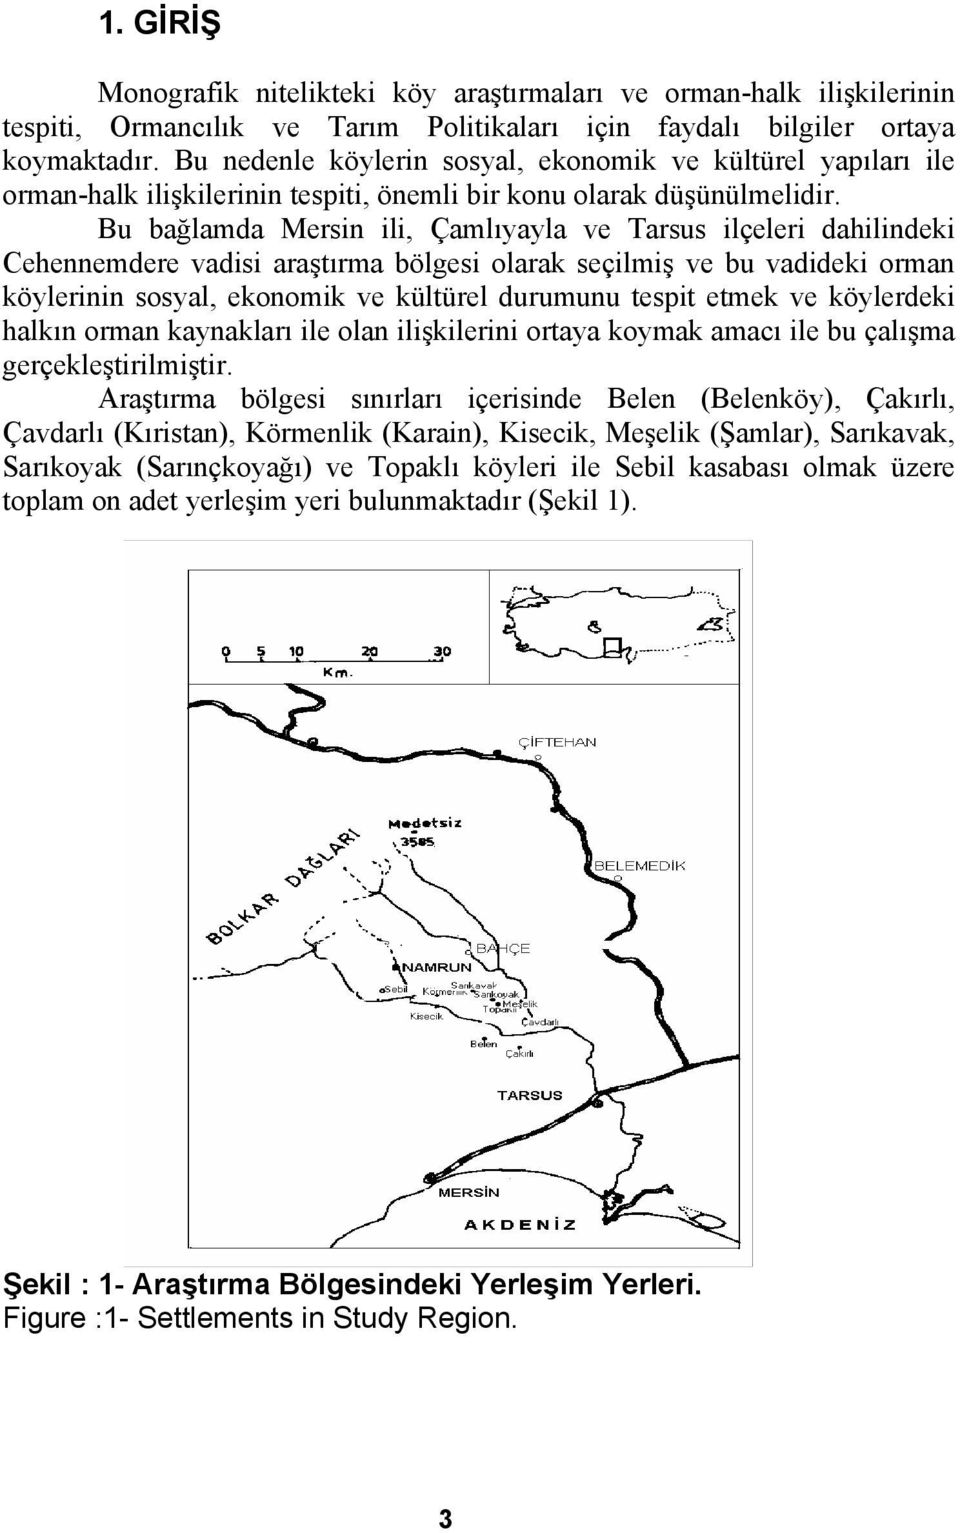 Bu bağlamda Mersin ili, Çamlıyayla ve Tarsus ilçeleri dahilindeki Cehennemdere vadisi araştırma bölgesi olarak seçilmiş ve bu vadideki orman köylerinin sosyal, ekonomik ve kültürel durumunu tespit